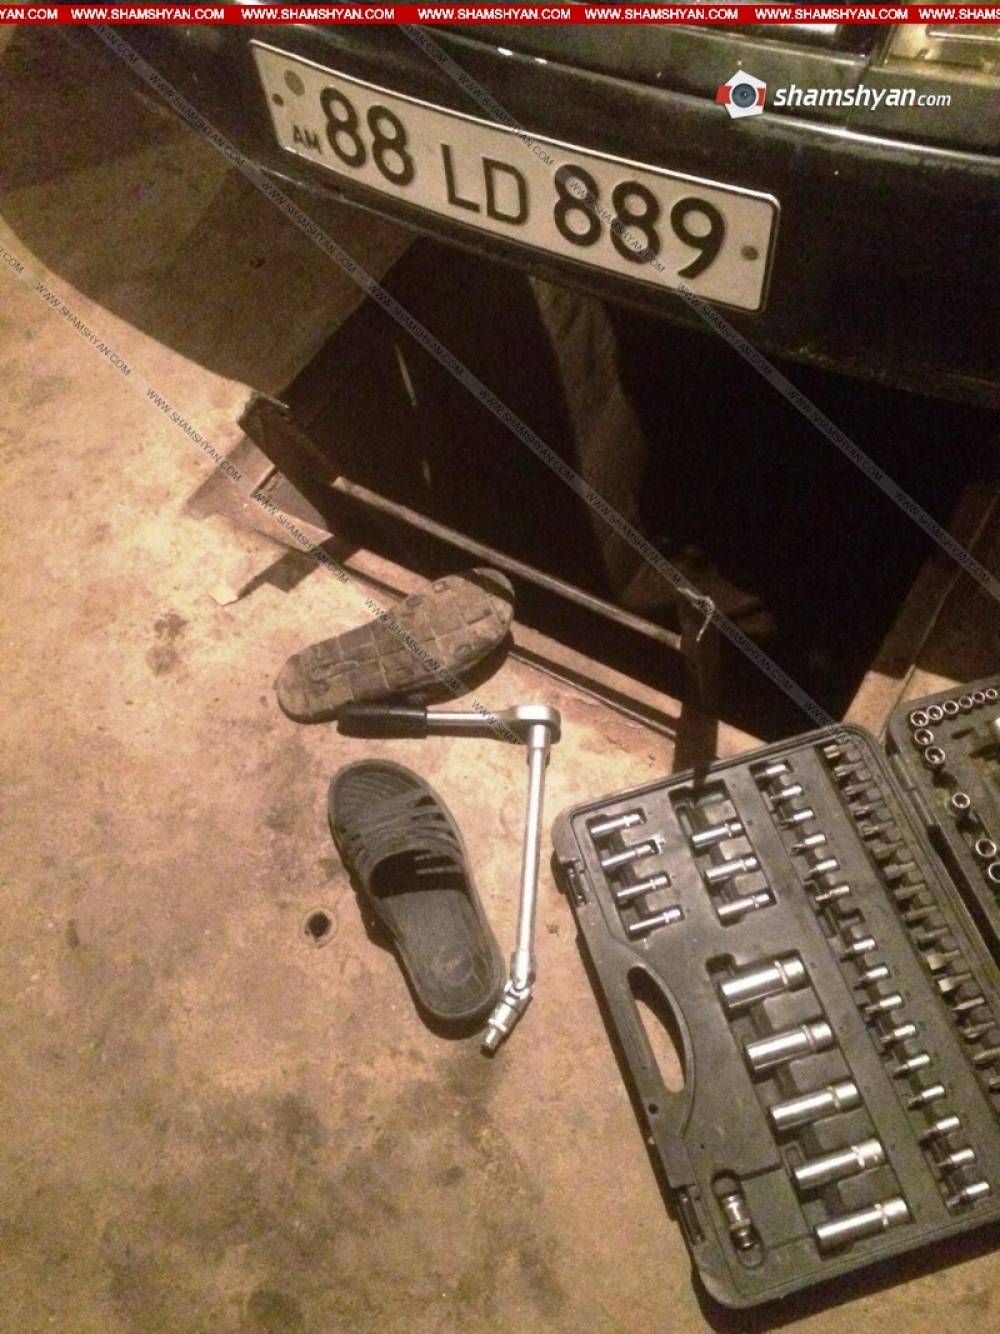 Սարդարապատ գյուղում դպրոցականը ավտոտնակում ավտոմեքենան նորոգելիս ոտքը դրել է բաց հոսանքալարի վրա և հոսանքահարվելով՝ մահացել